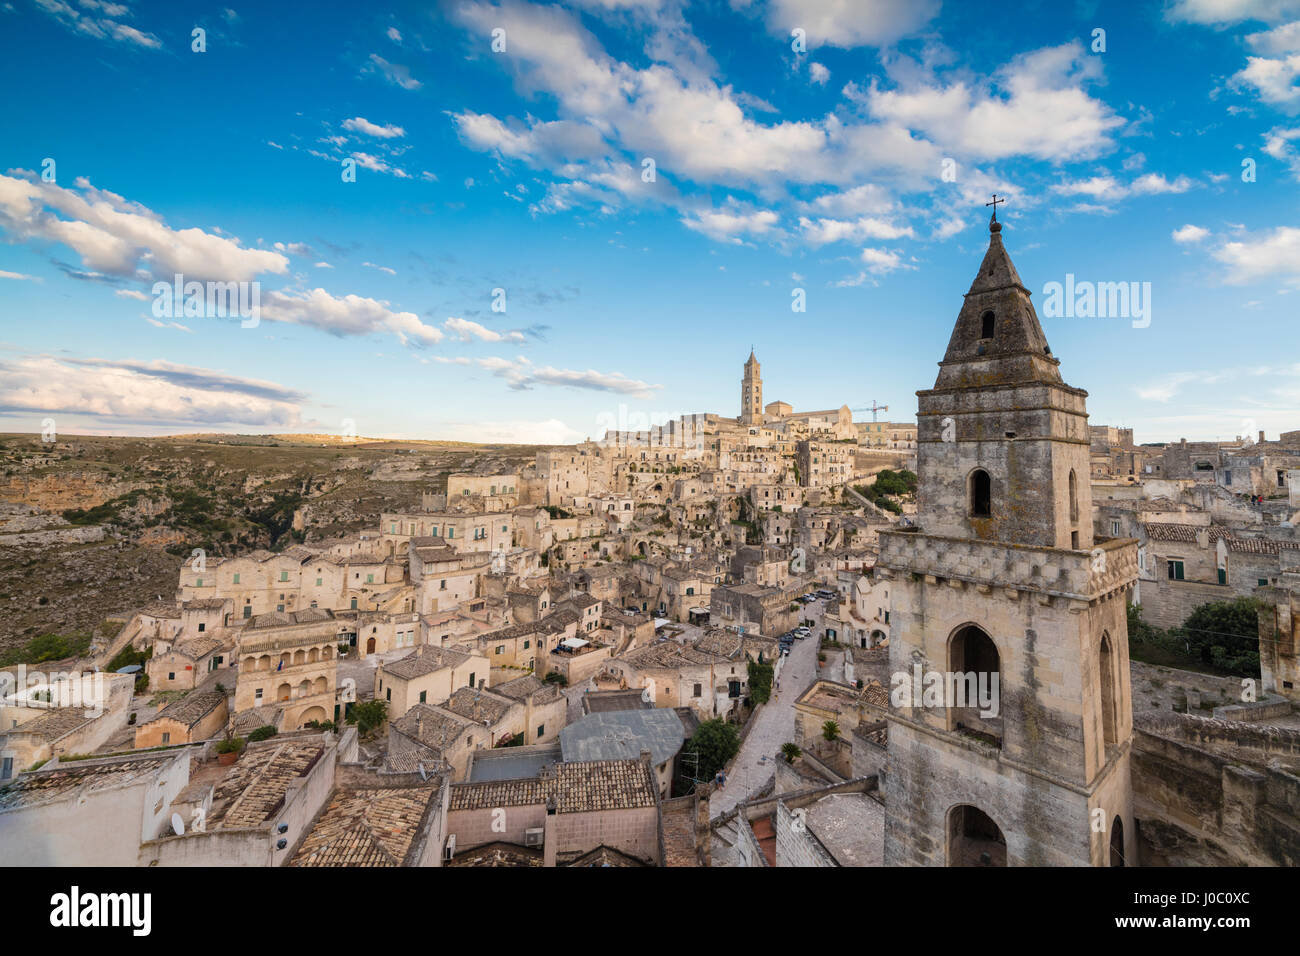 Vista de la antigua ciudad y centro histórico llamado Sassi, encaramado en las rocas en la cima de la colina, Matera, Basilicata, Italia Foto de stock